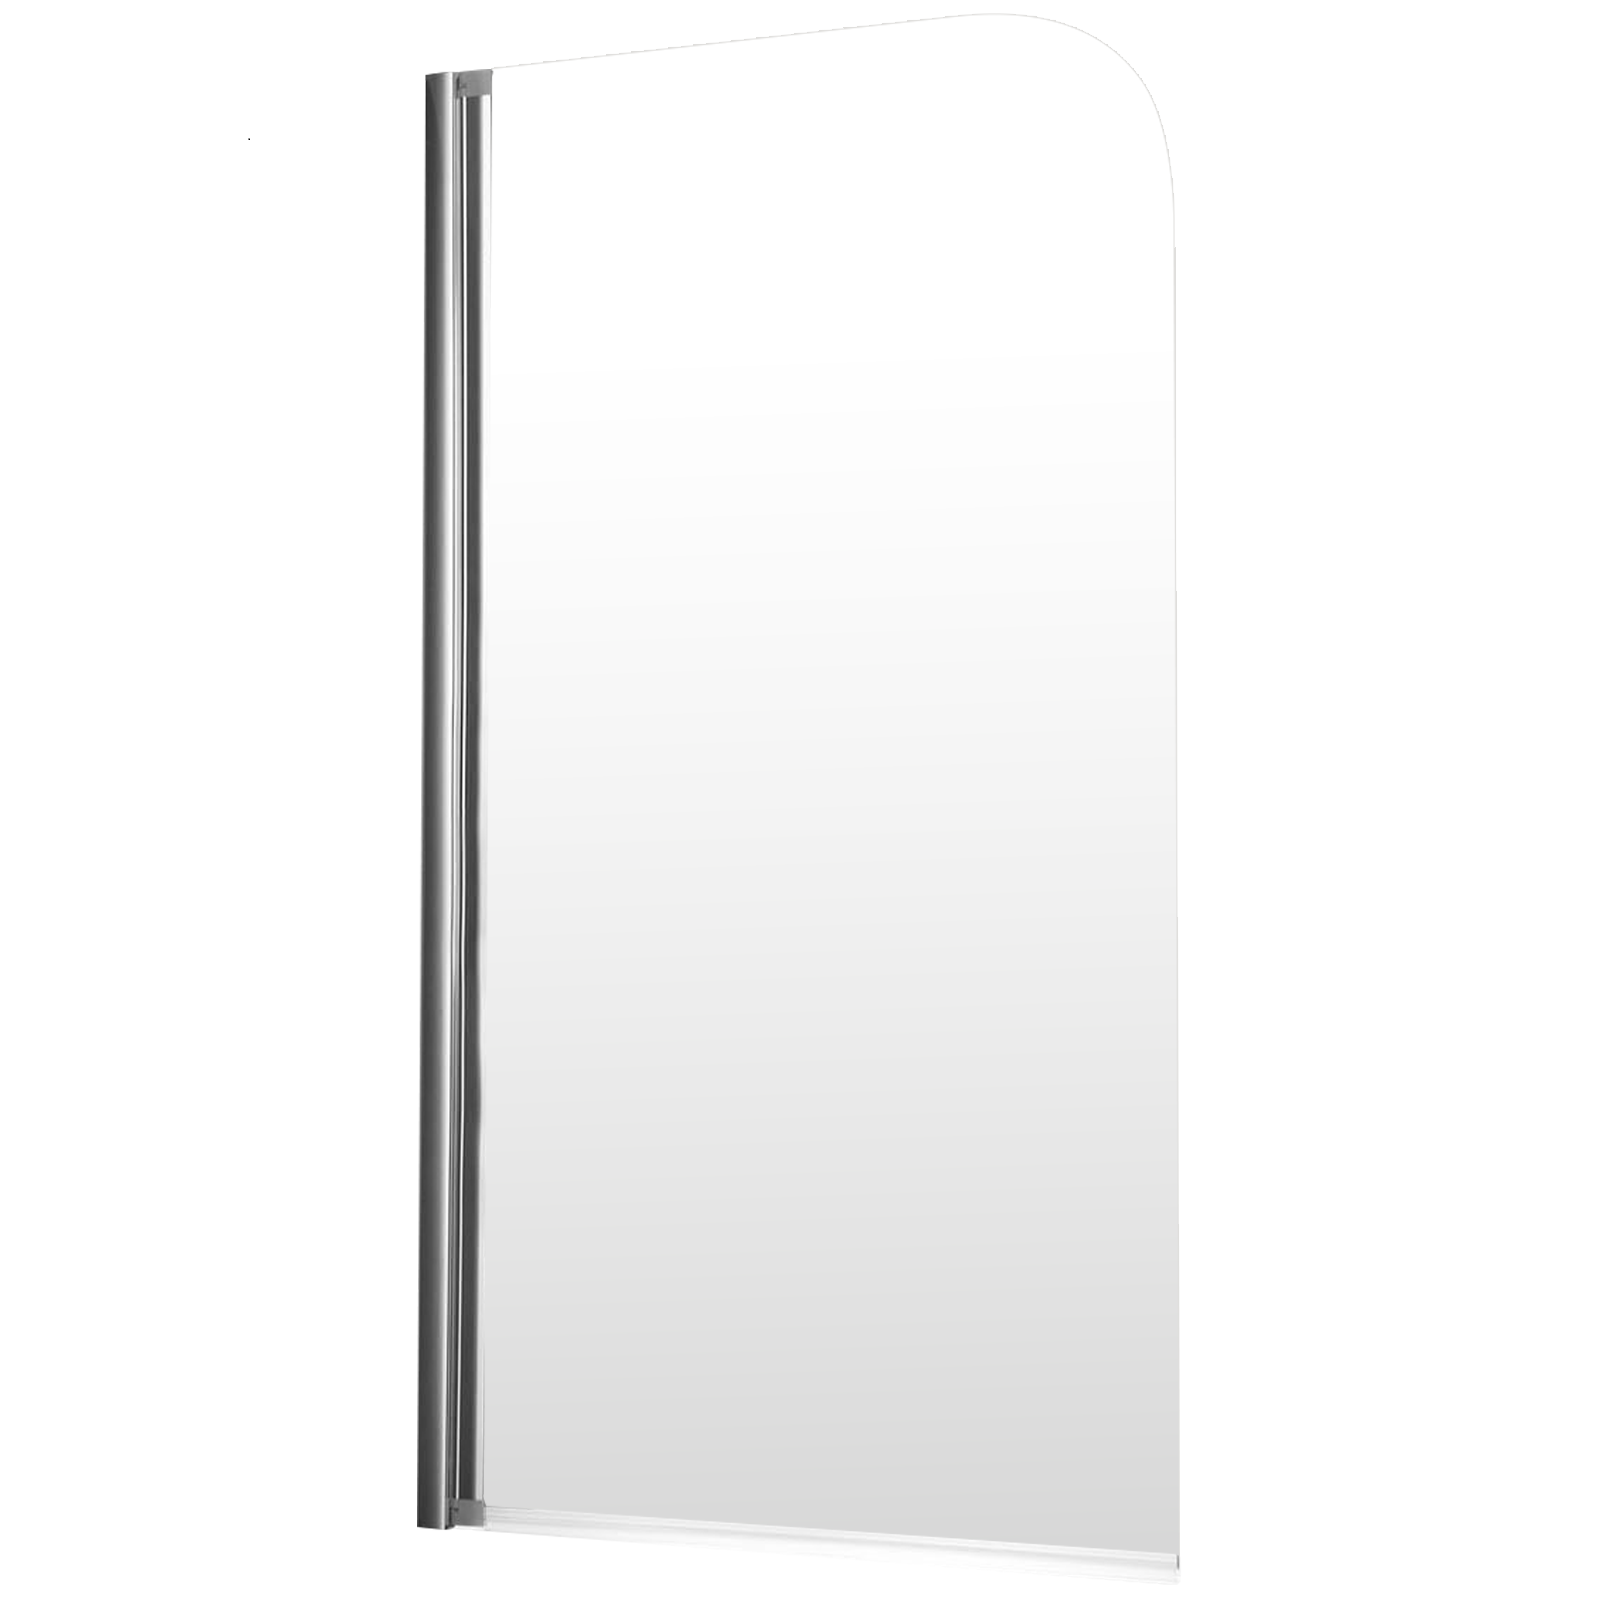 Schulte pare-baignoire rabattable, 80 x 140 cm, verre transparent 5 mm, écran paroi de baignoire pivotant mobile 1 volet, profilé aspect chromé 7